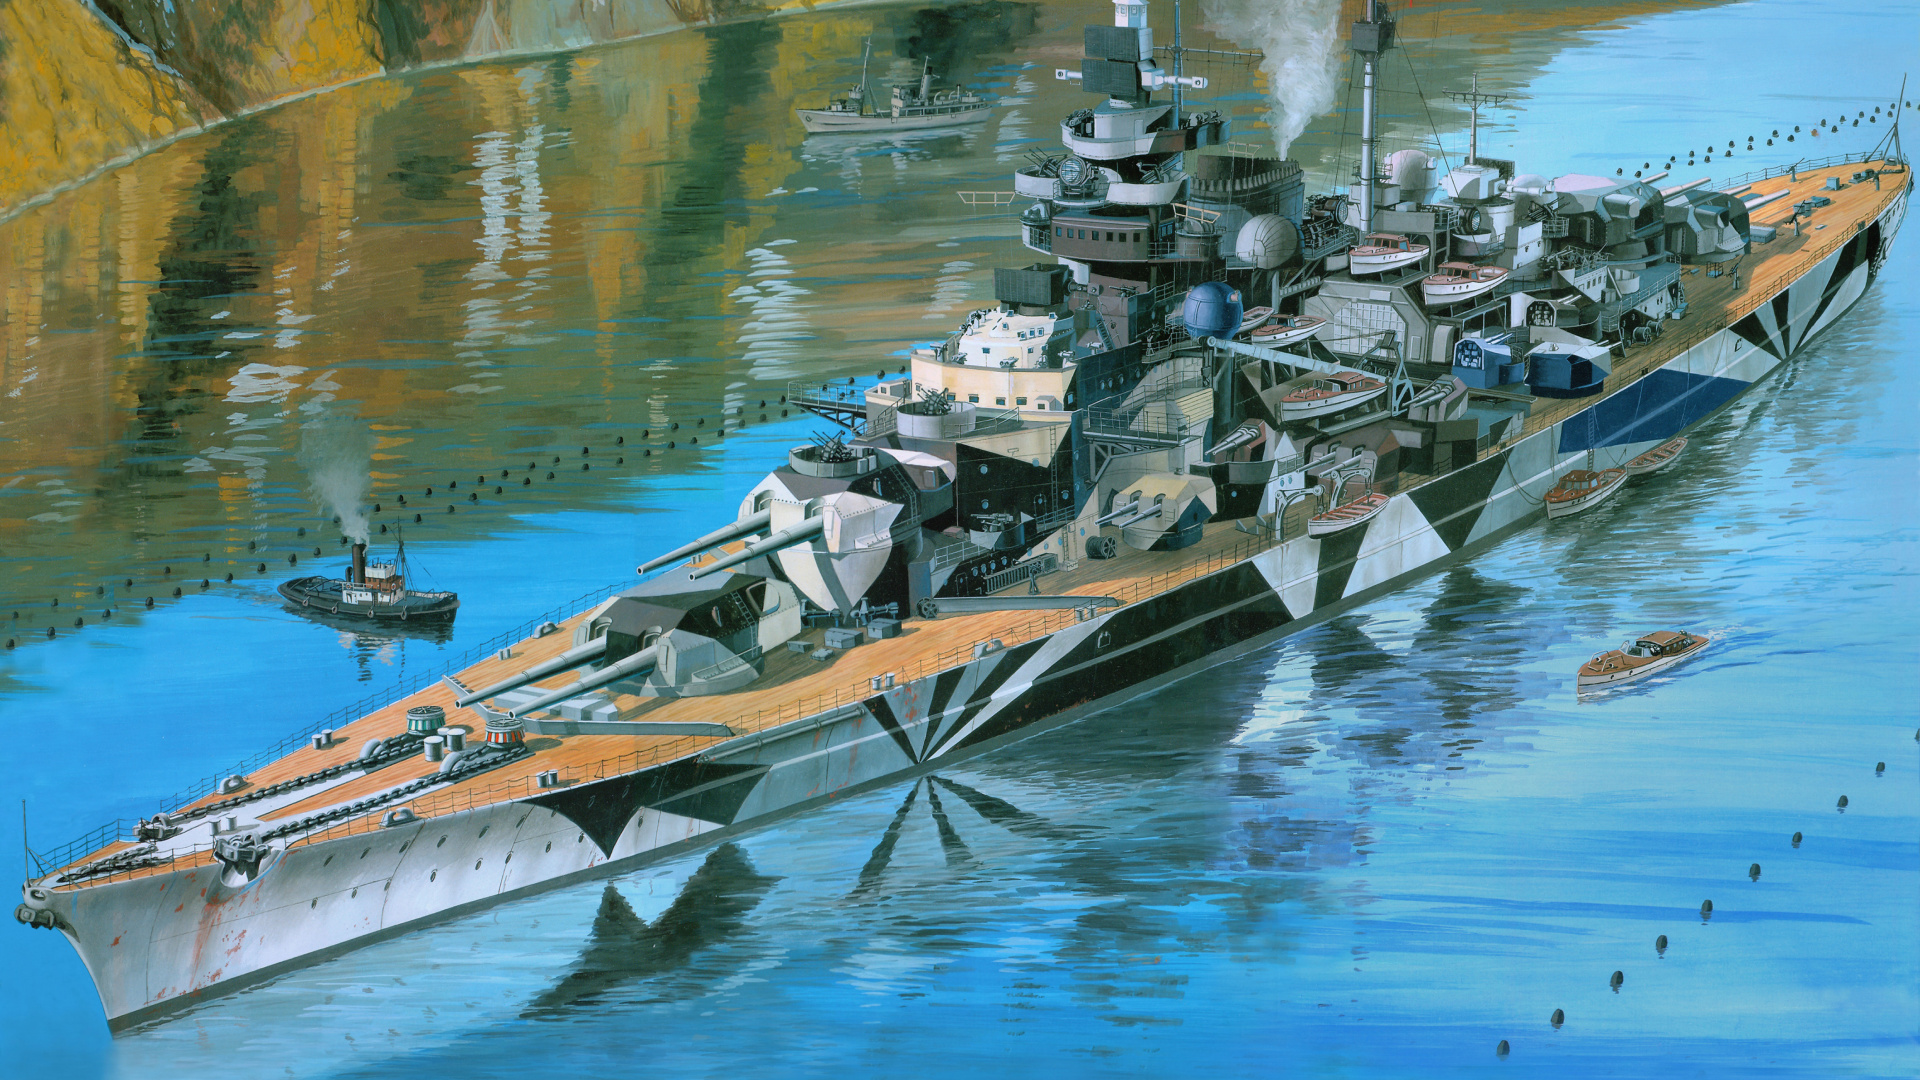 雷维尔, 塑料模型, 船只, 军舰, 战舰 壁纸 1920x1080 允许